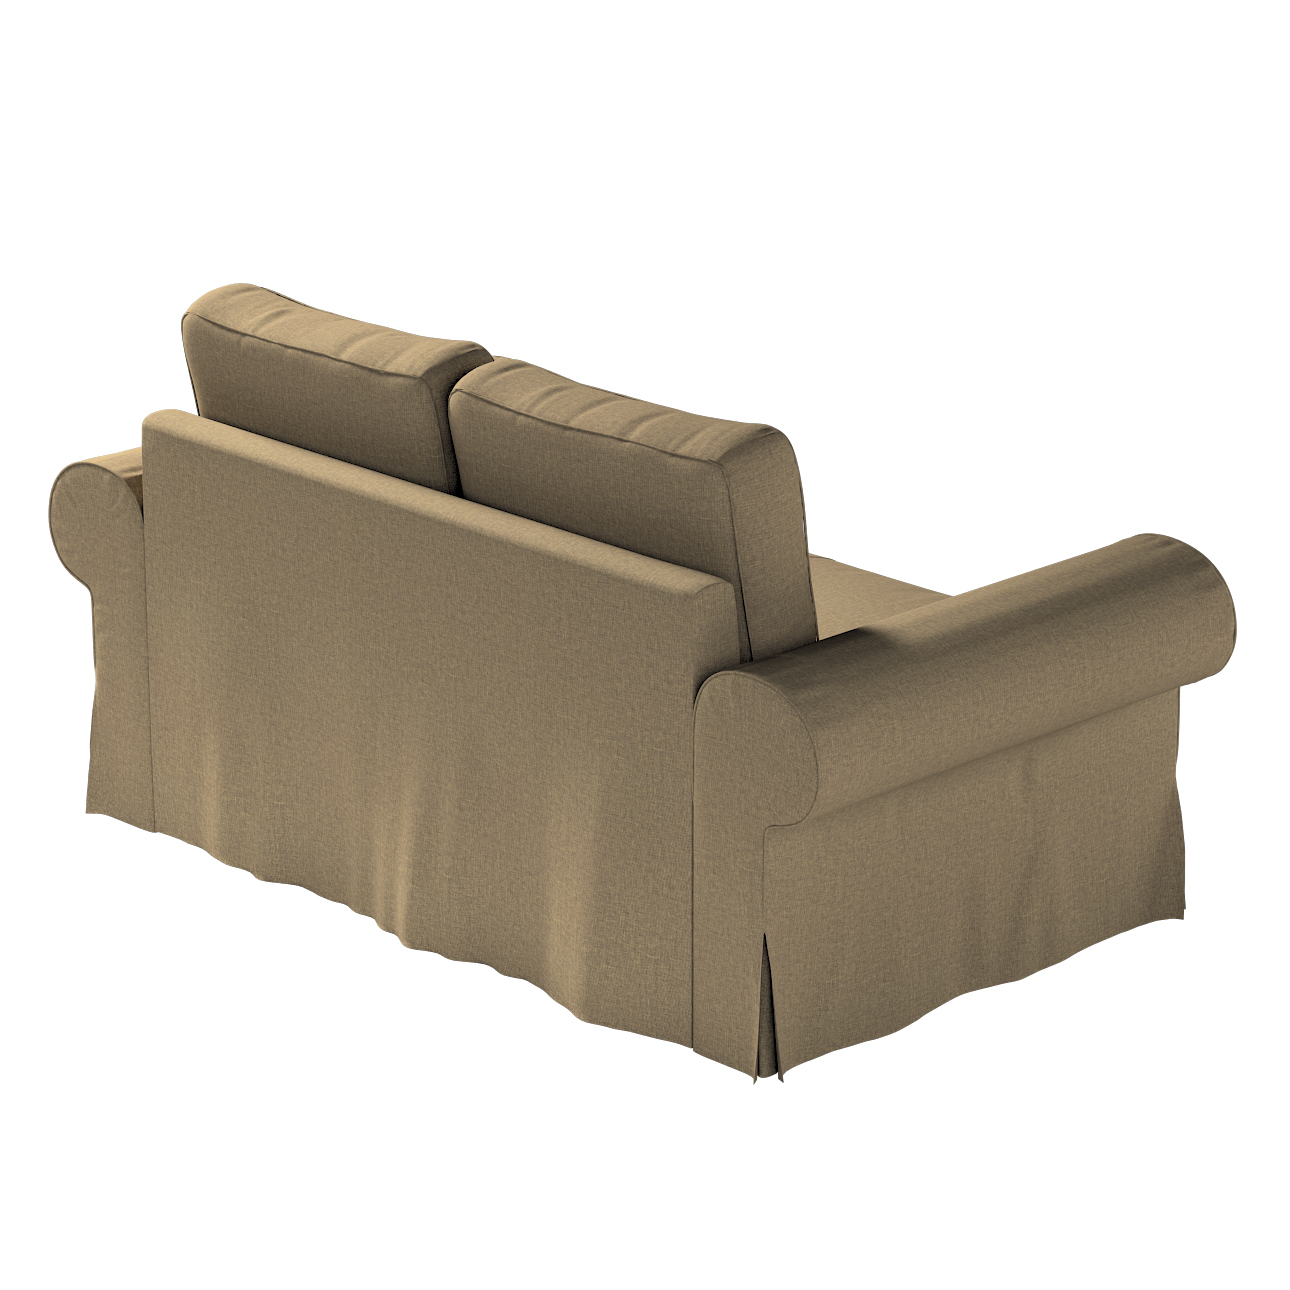 Bezug für Backabro 2-Sitzer Sofa ausklappbar, grau-braun, Bezug für Backabr günstig online kaufen